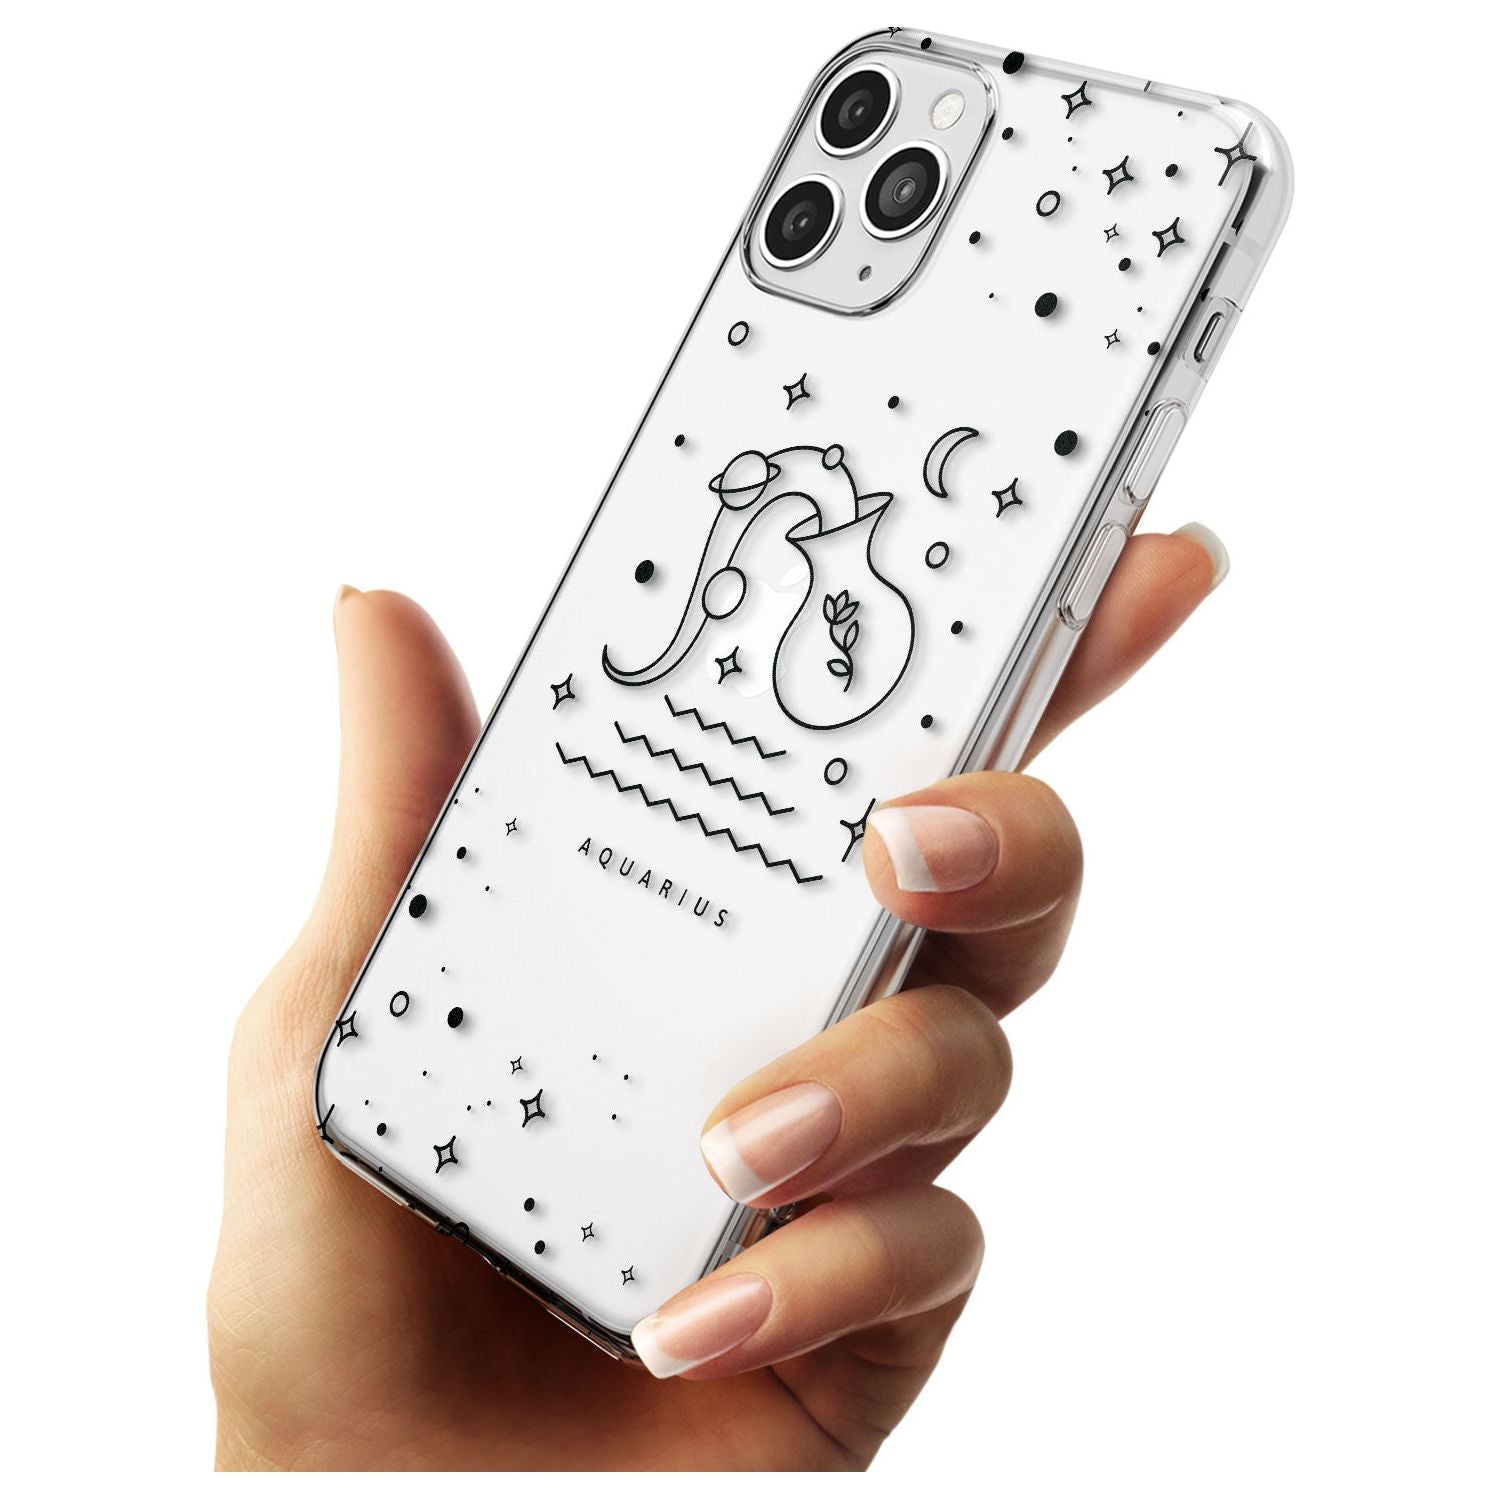 Aquarius Emblem - Transparent Design Slim TPU Phone Case for iPhone 11 Pro Max